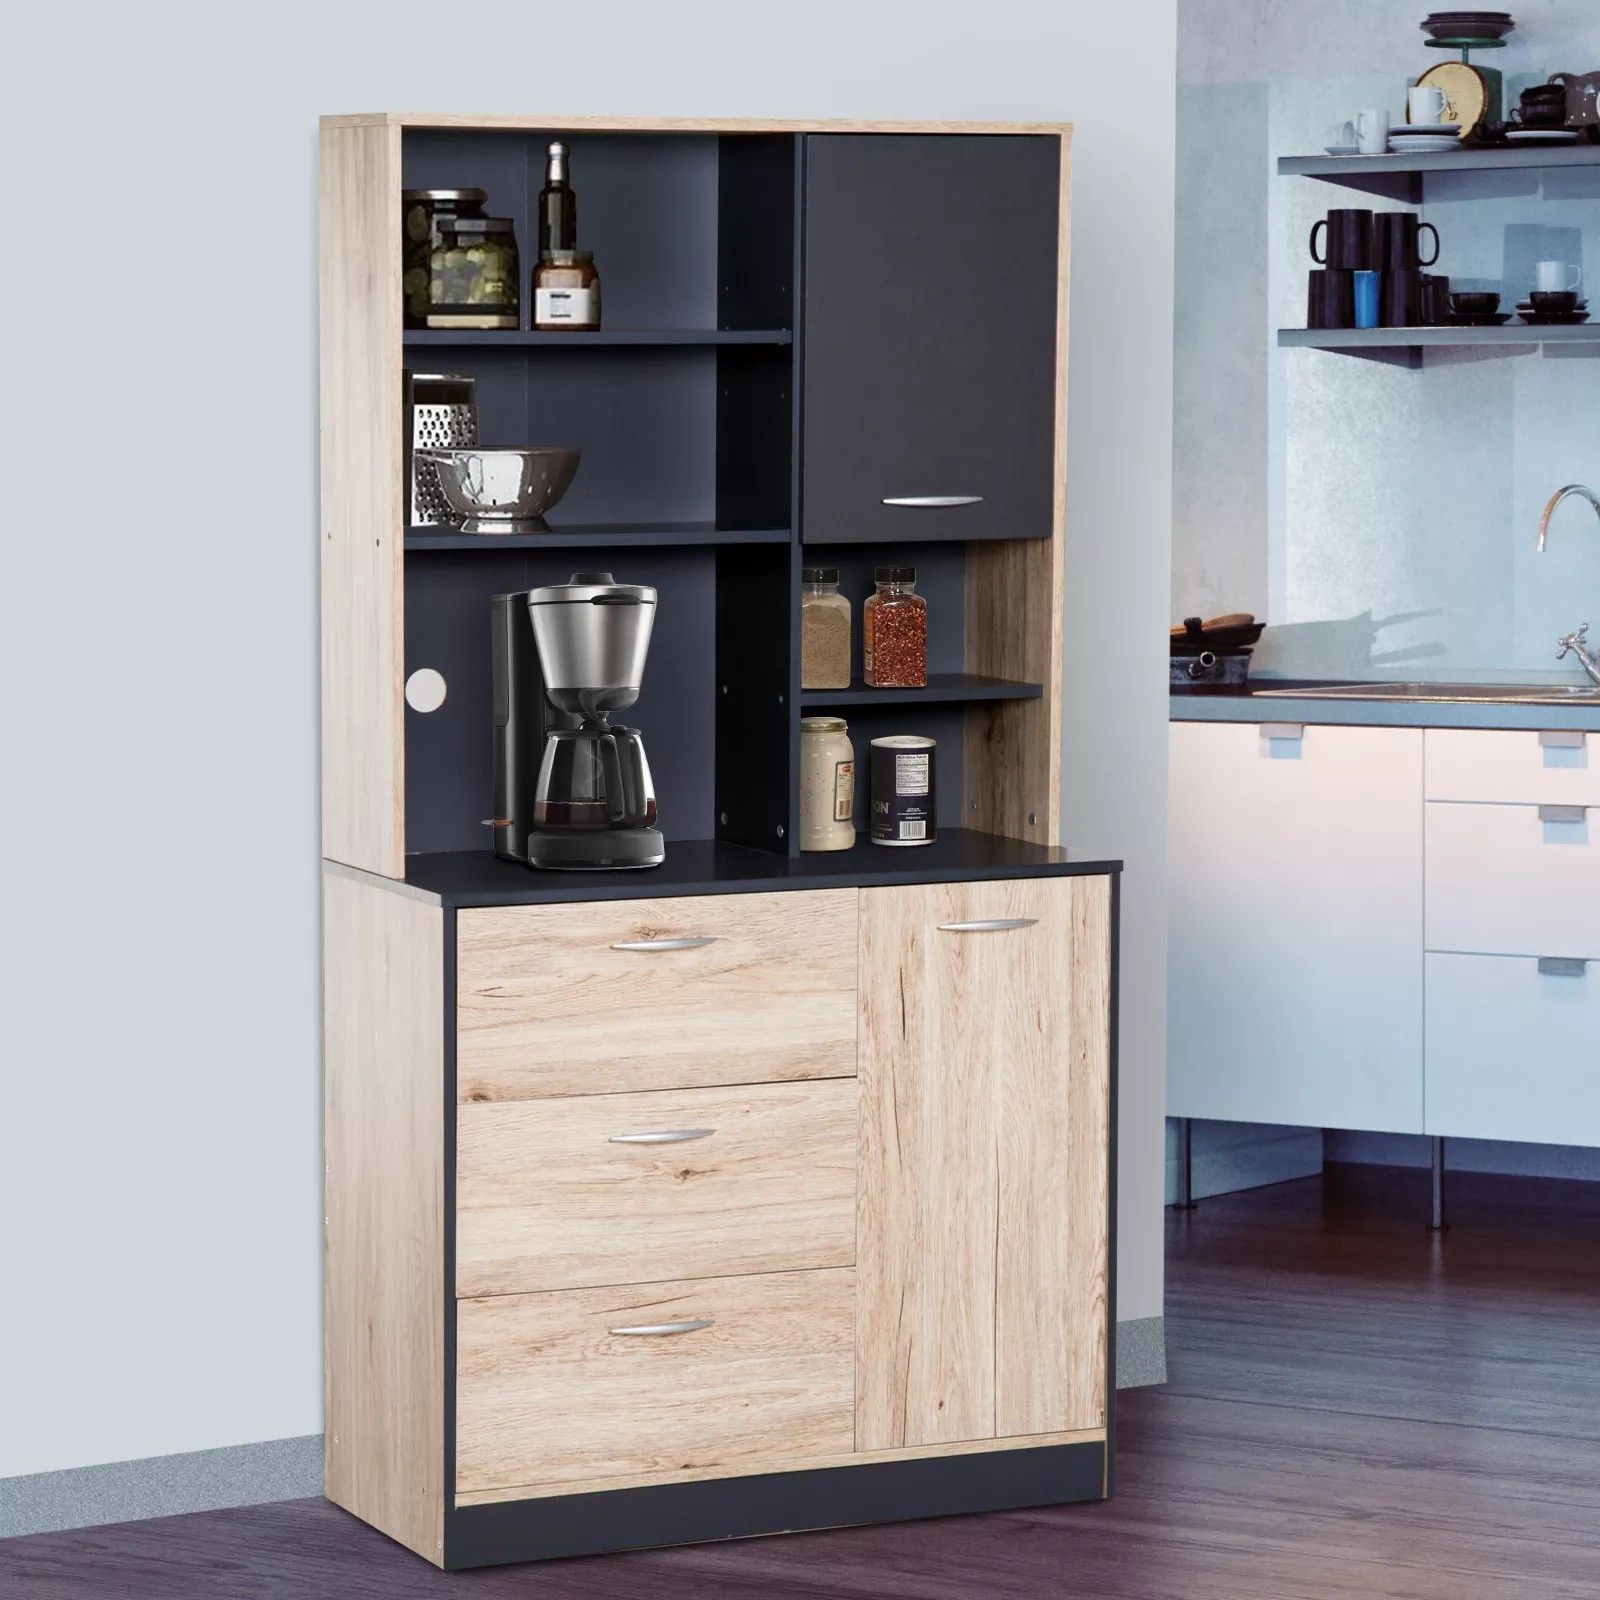 Freestanding Kitchen Cupboard Cabinet